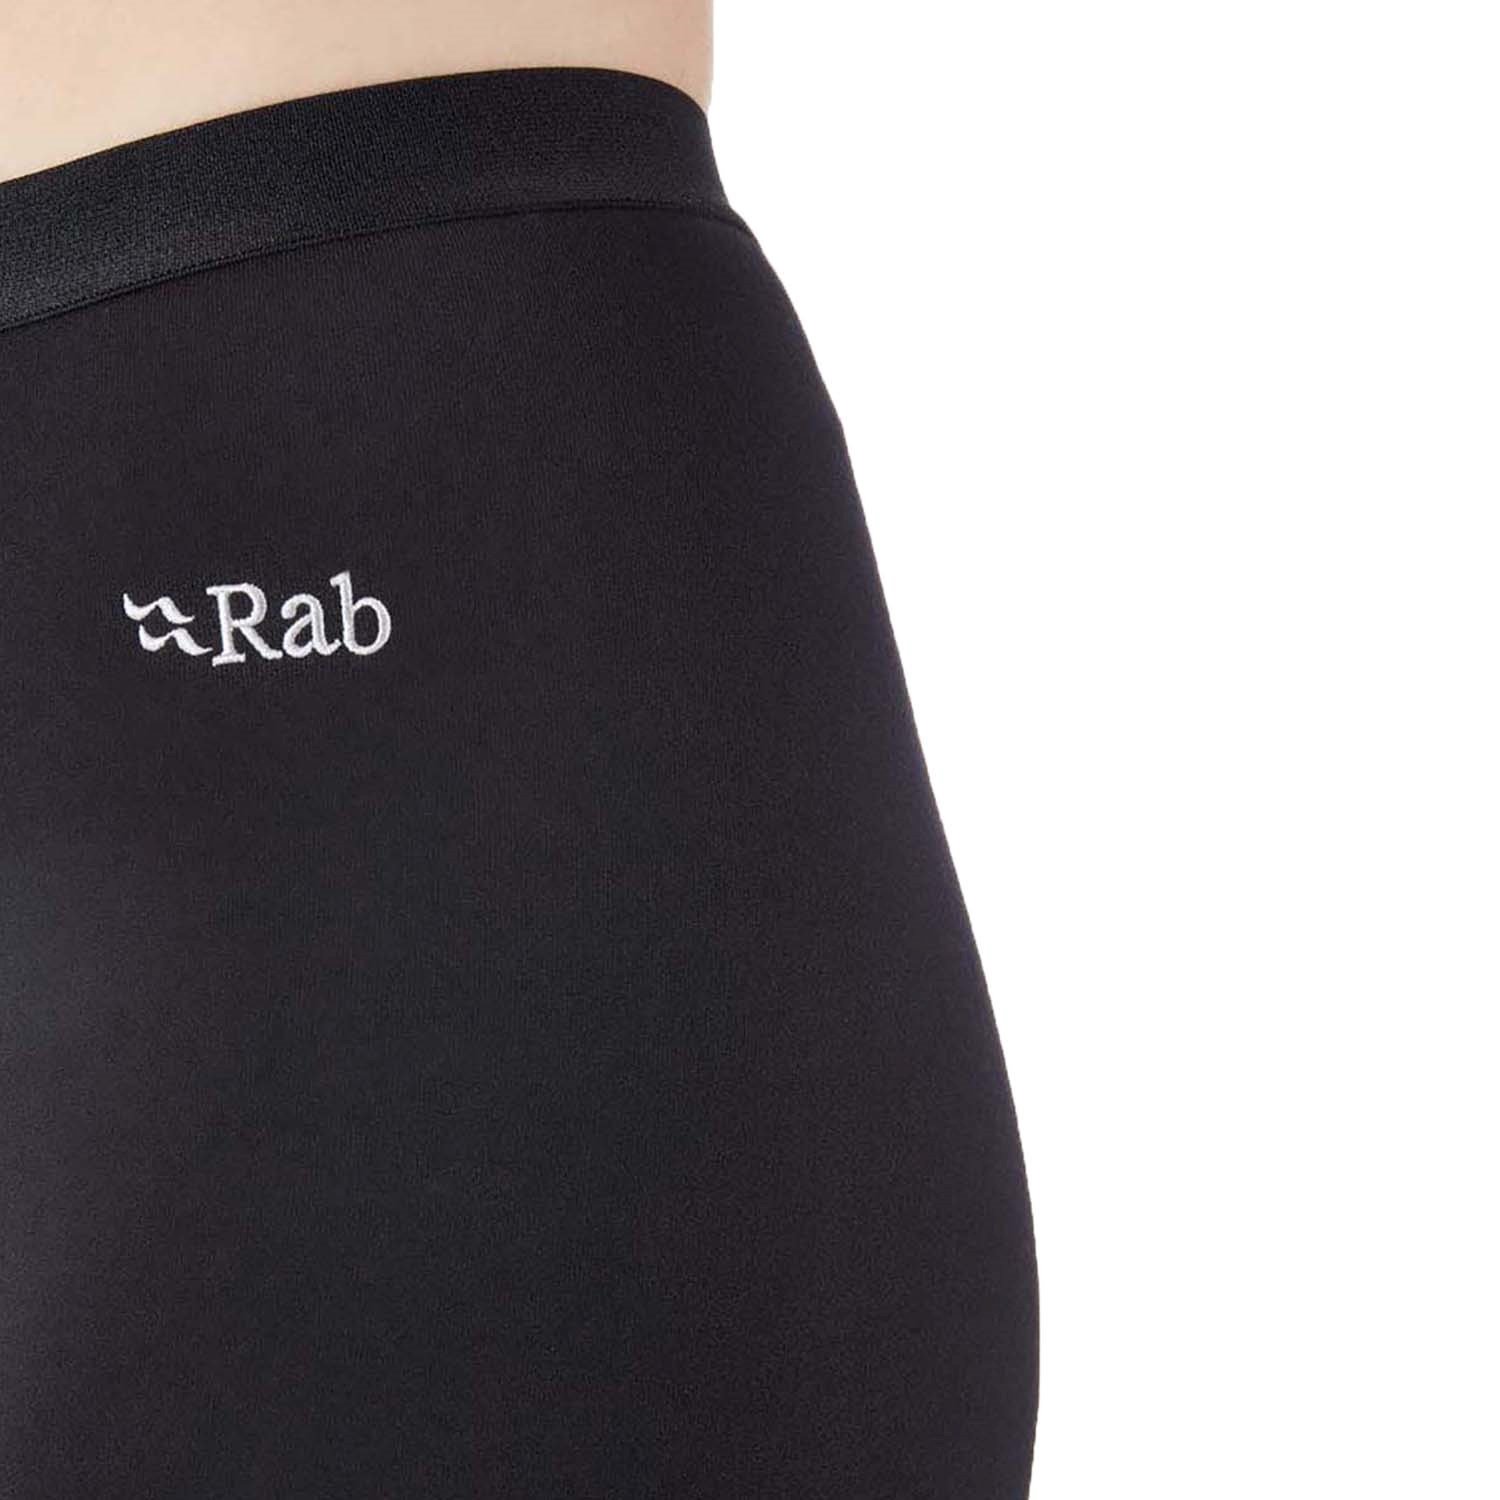 Rab® Power Stretch Pro Pants - Women's